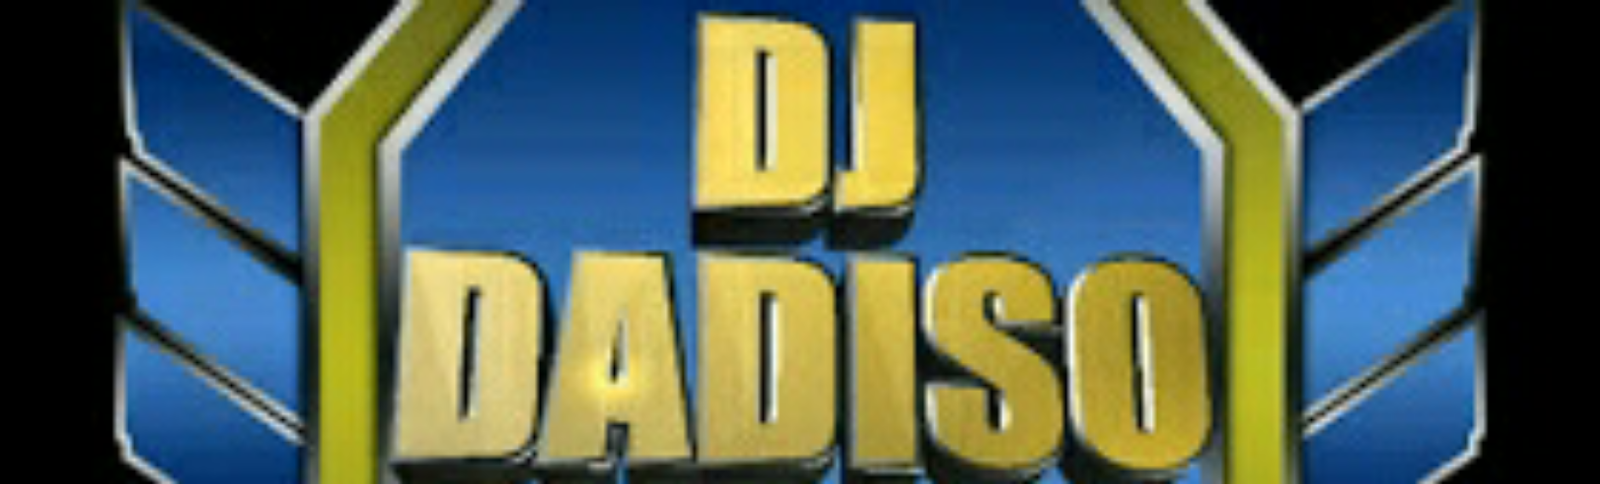 DJ DADISO | OFFICIAL WEBSITE